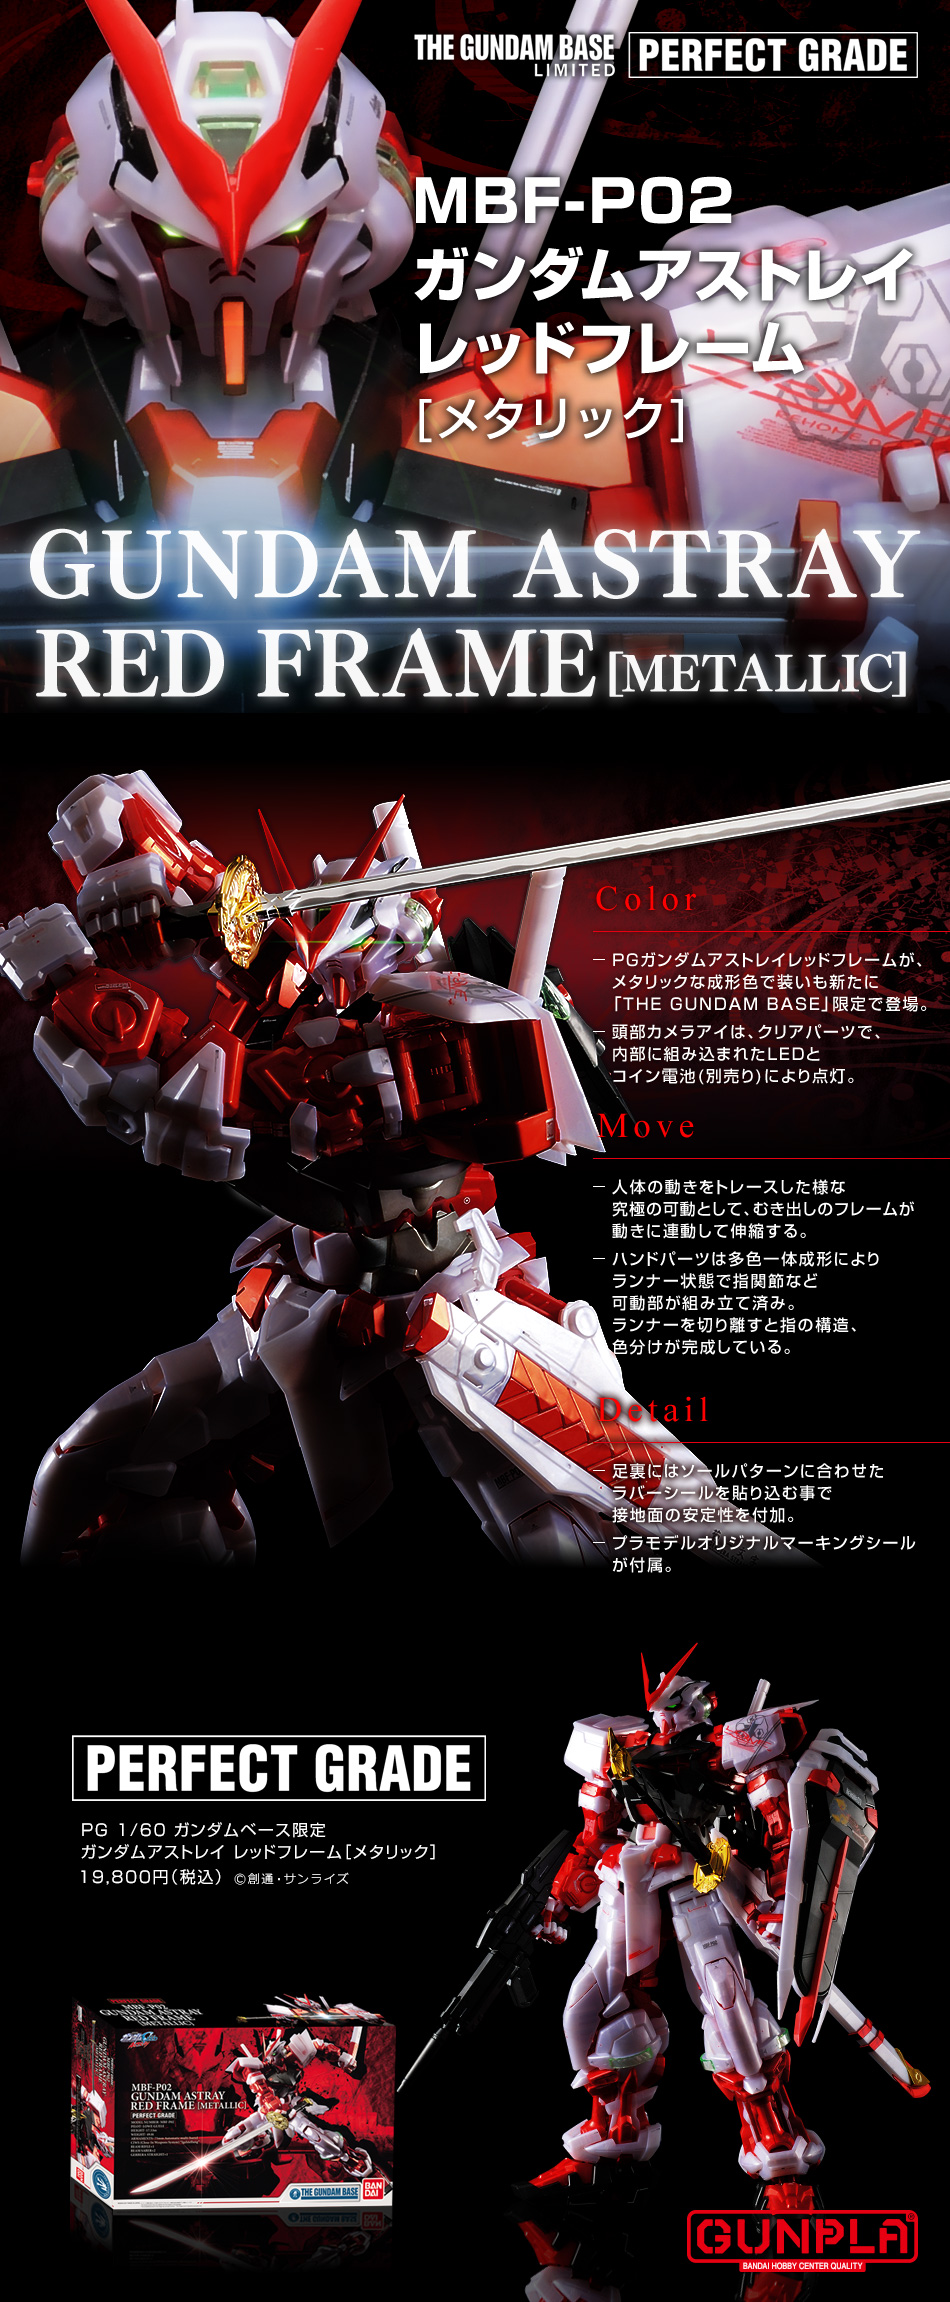 Pg 1 60 ガンダムベース限定 ガンダムアストレイ レッドフレーム メタリック 商品情報 The Gundam Base ガンダムベース公式サイト